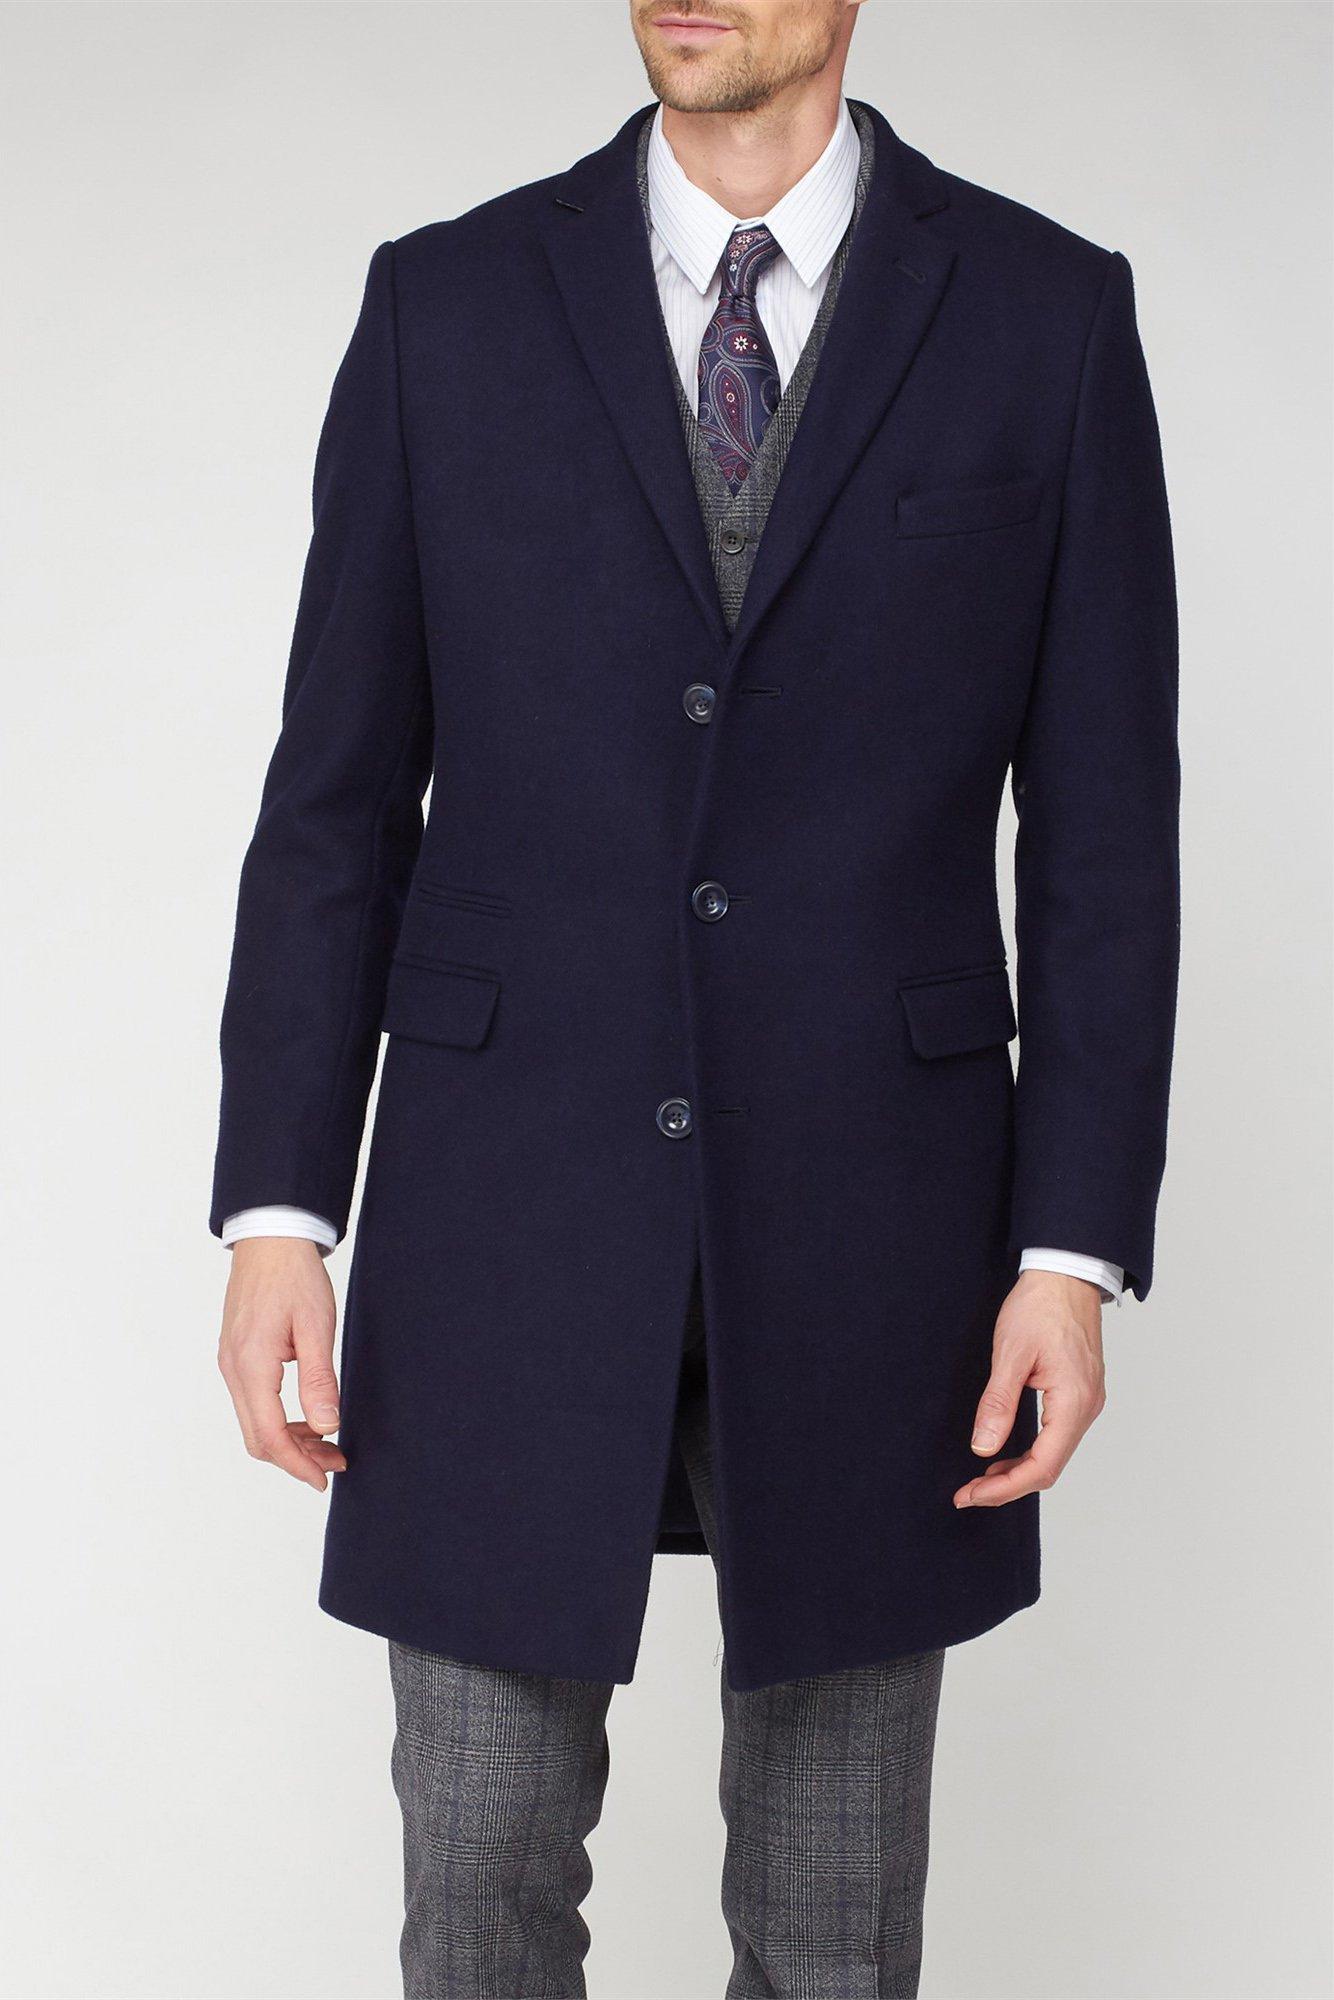 Jackets & Coats | Overcoat | Jeff Banks